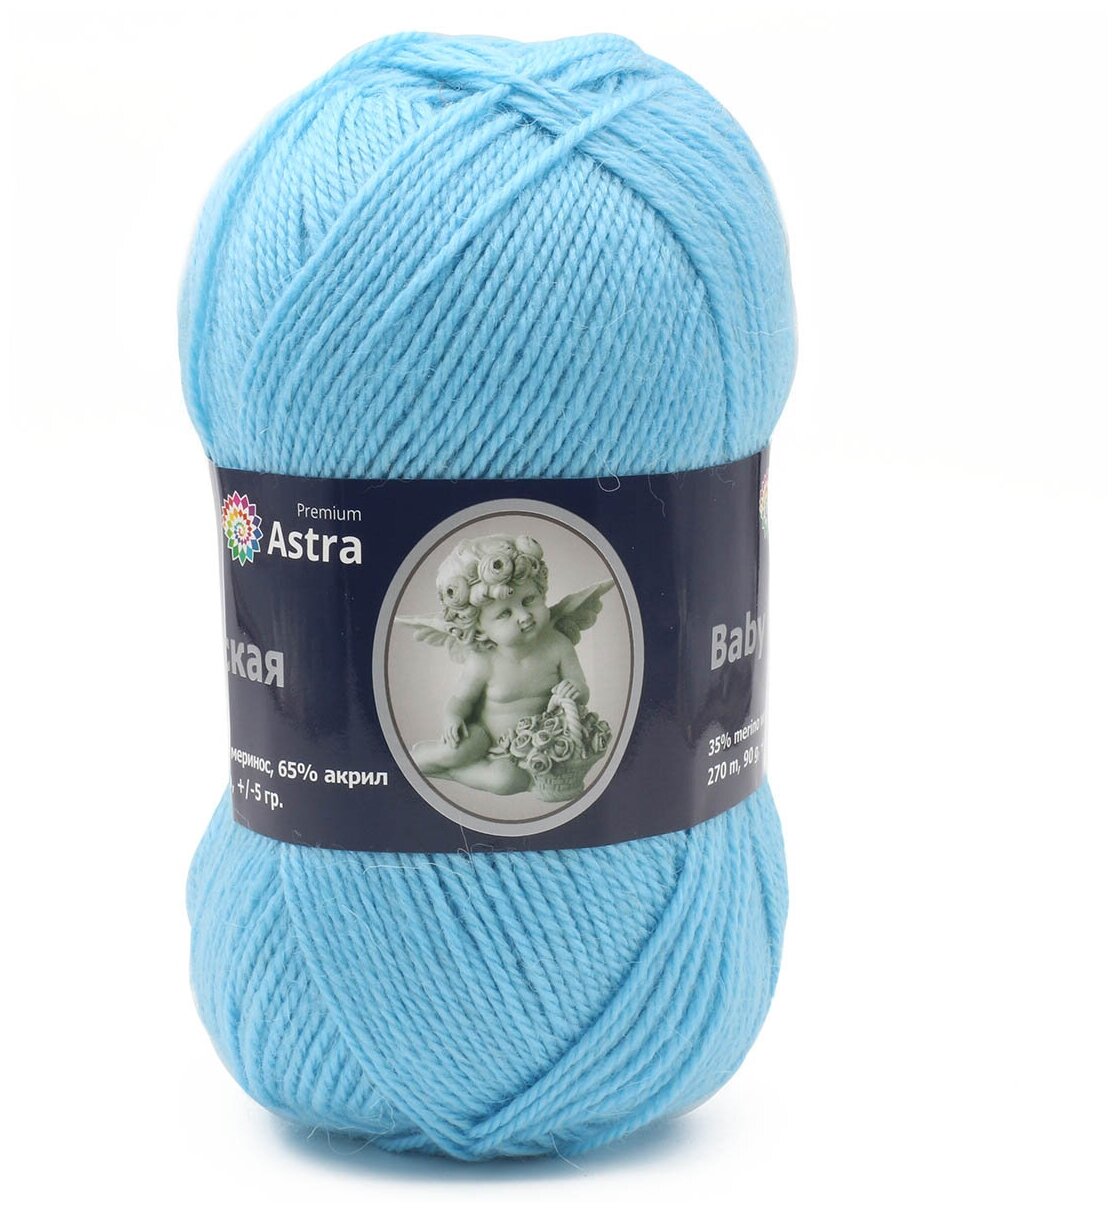 Пряжа для вязания Astra Premium 'Детская', 90г, 270м (35% шерсть меринос, 65% акрил) (015 голубой), 3 мотка